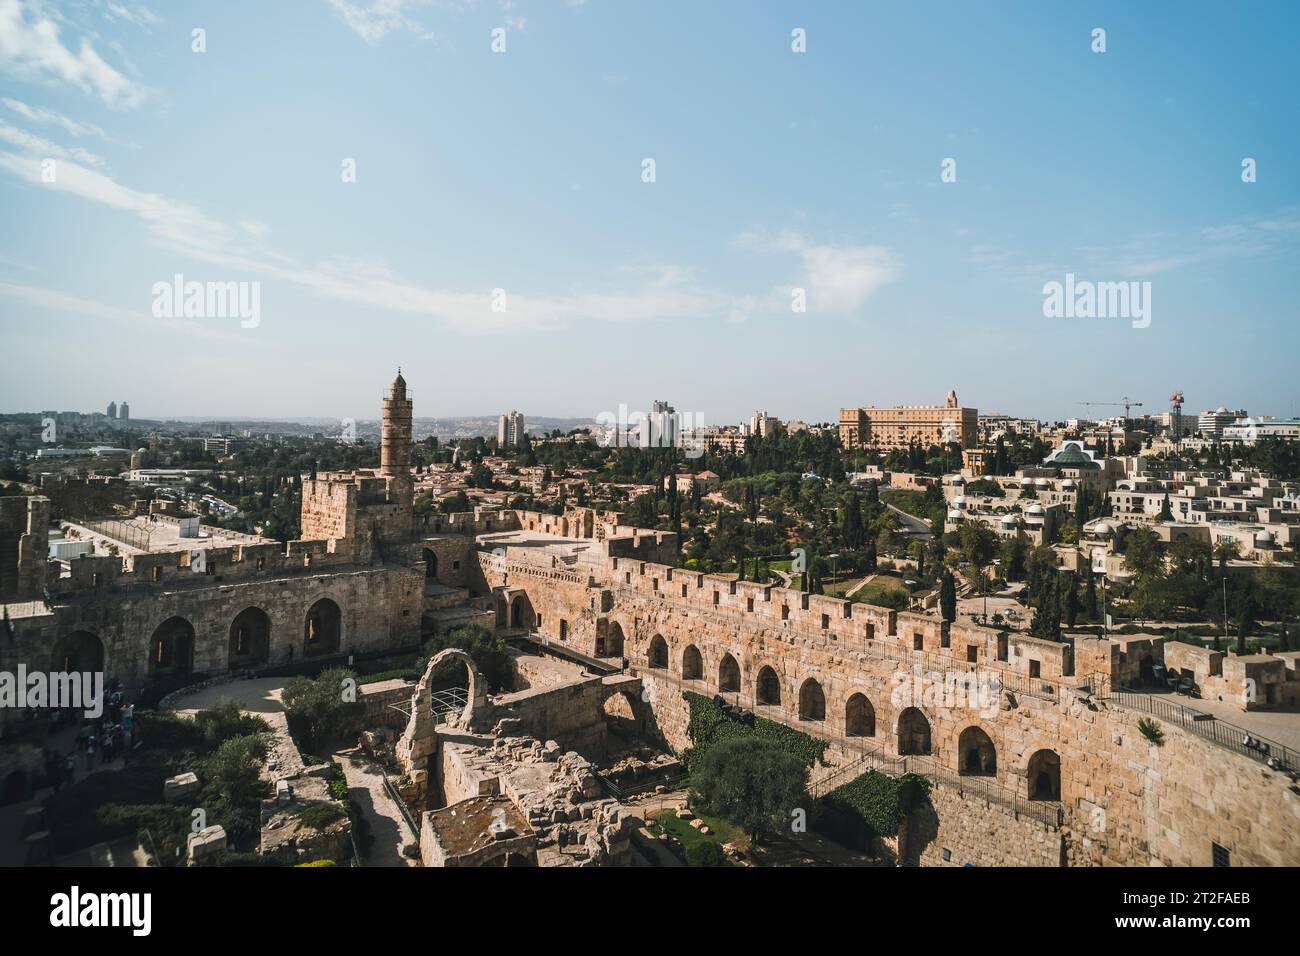 Torre de David Las murallas de la ciudad vieja de Jerusalén Israel contra el cielo. La torre de David es una antigua ciudadela situada cerca de la puerta de Jaffa en el ent Foto de stock